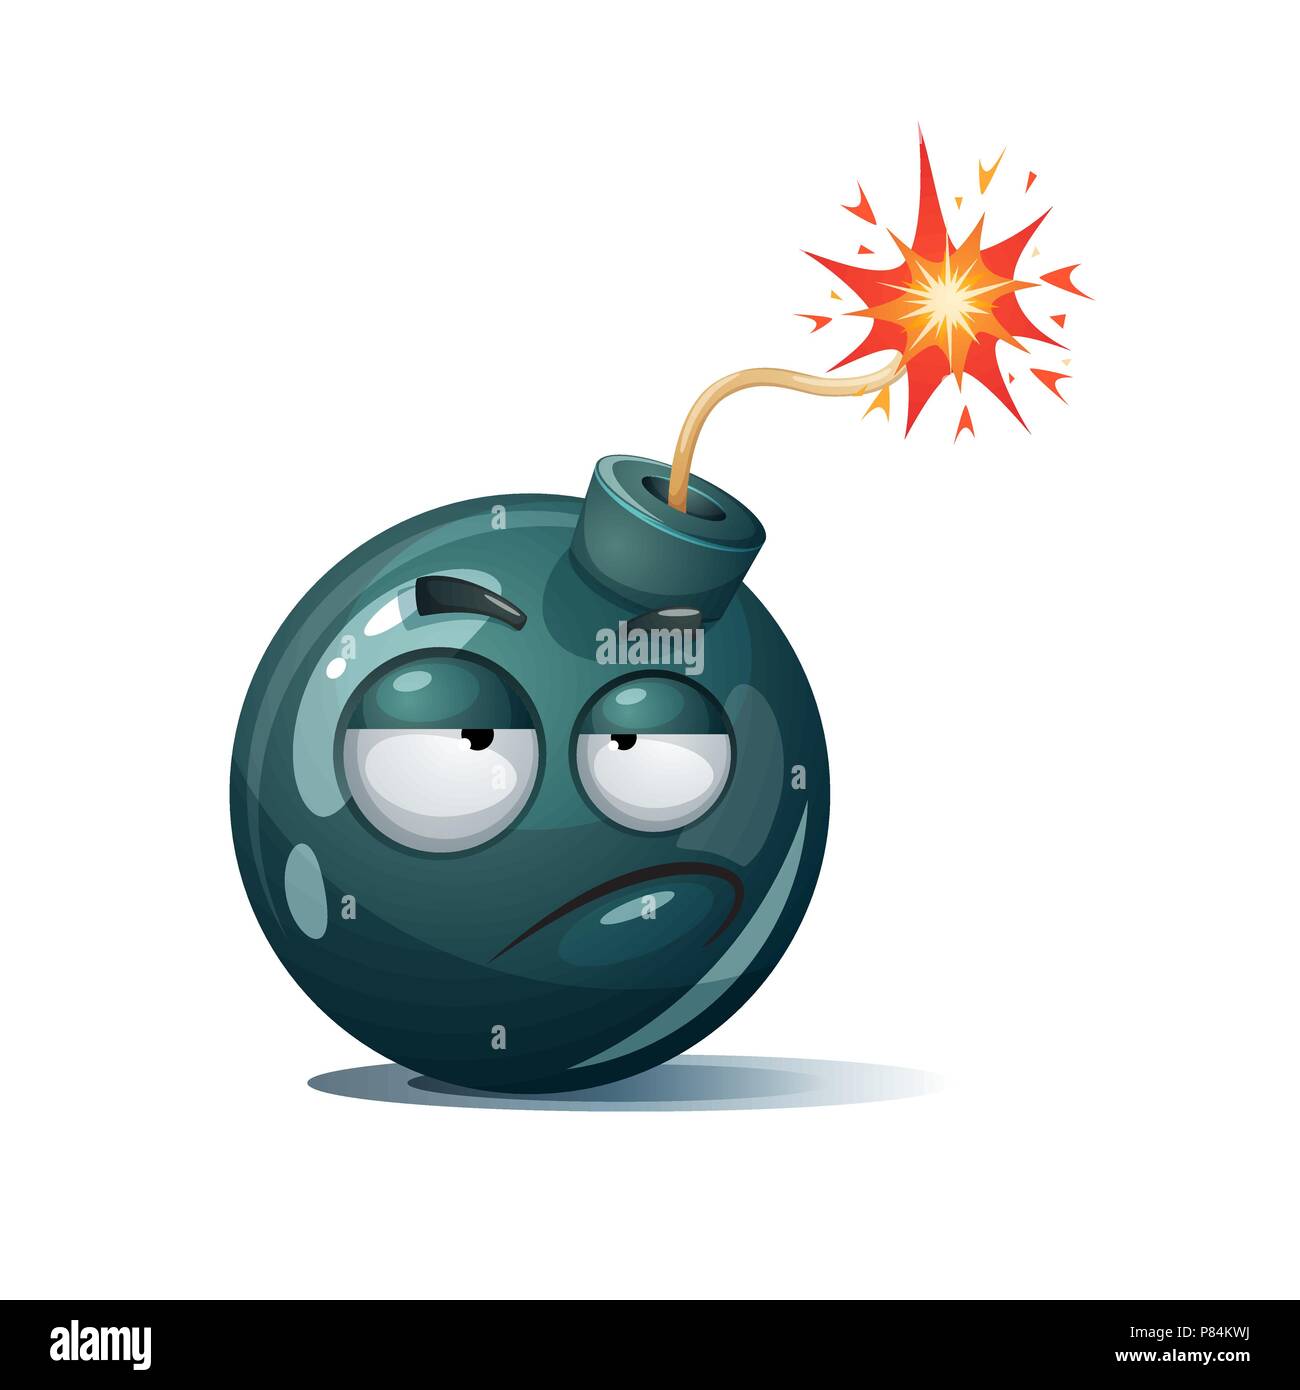 Cute, funny, crazy - cartoon bomb character. Stock Vector